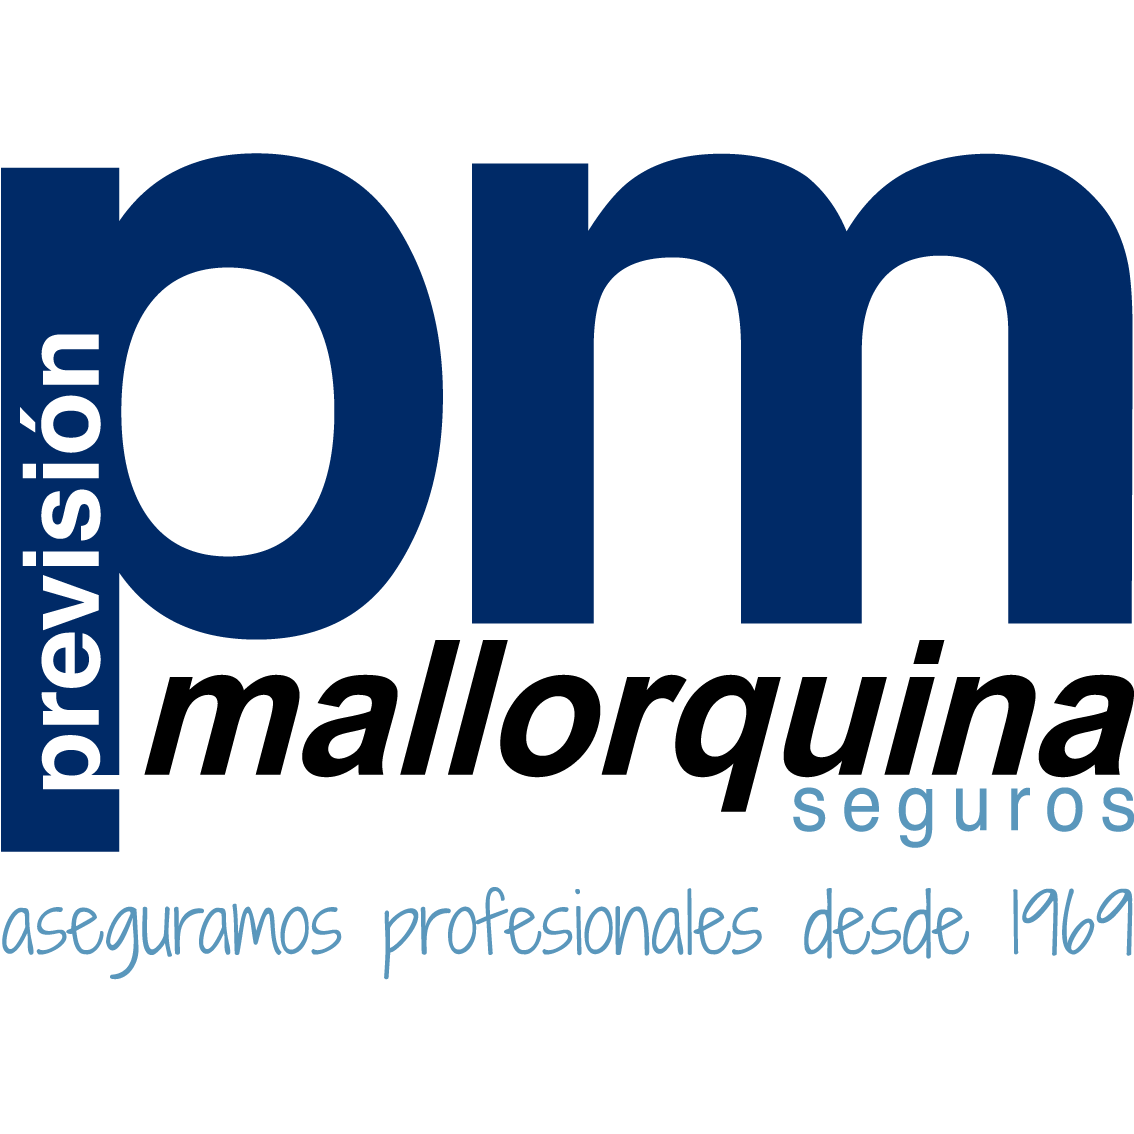 La Previsión Mallorquina de Seguros, S.A. Oficinas Centrales Logo